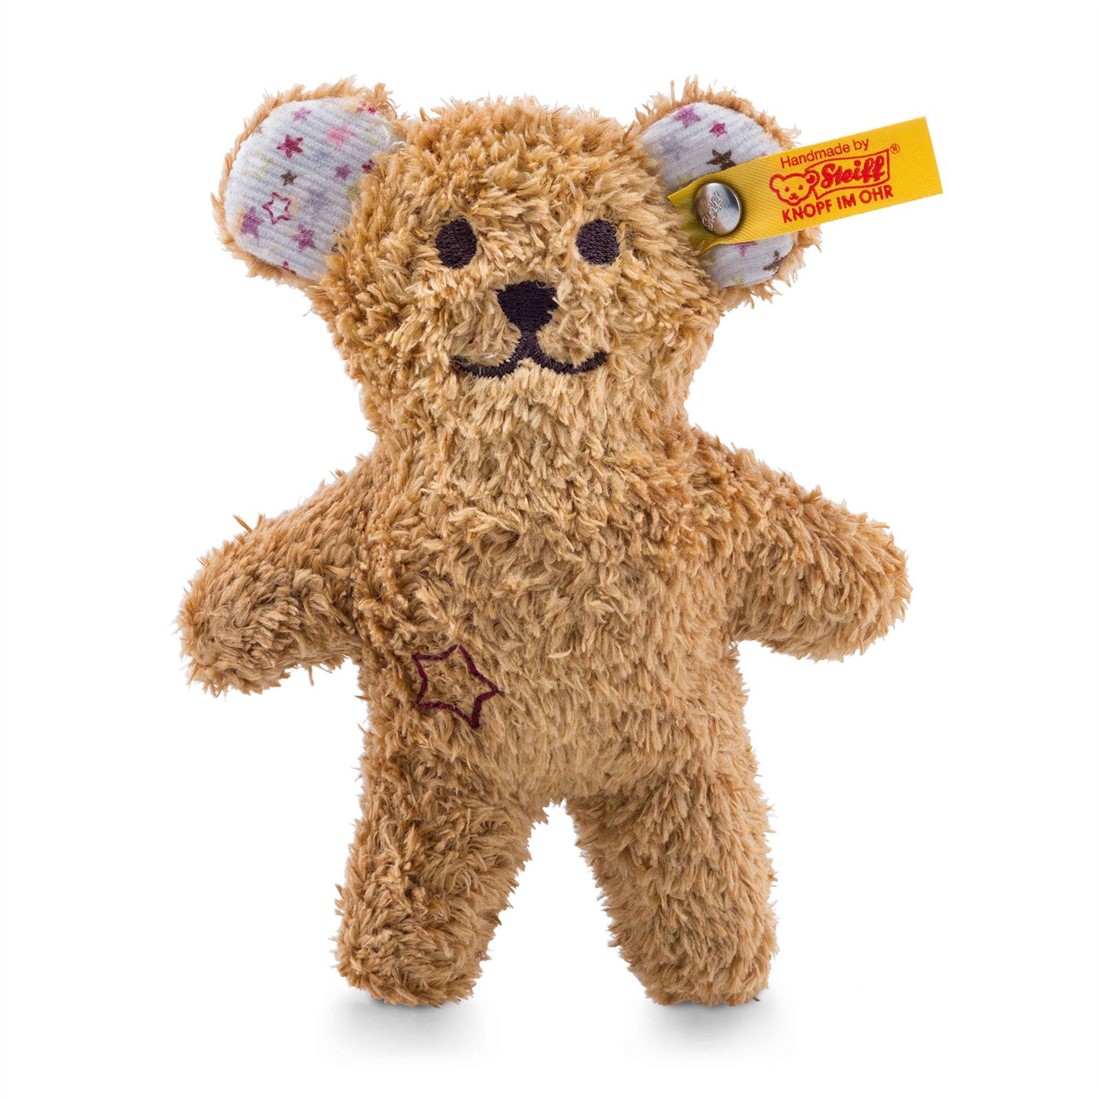 eerste oortelefoon huichelarij Steiff knuffel mini teddybeer met knisperfolie en rammelaar, bruin